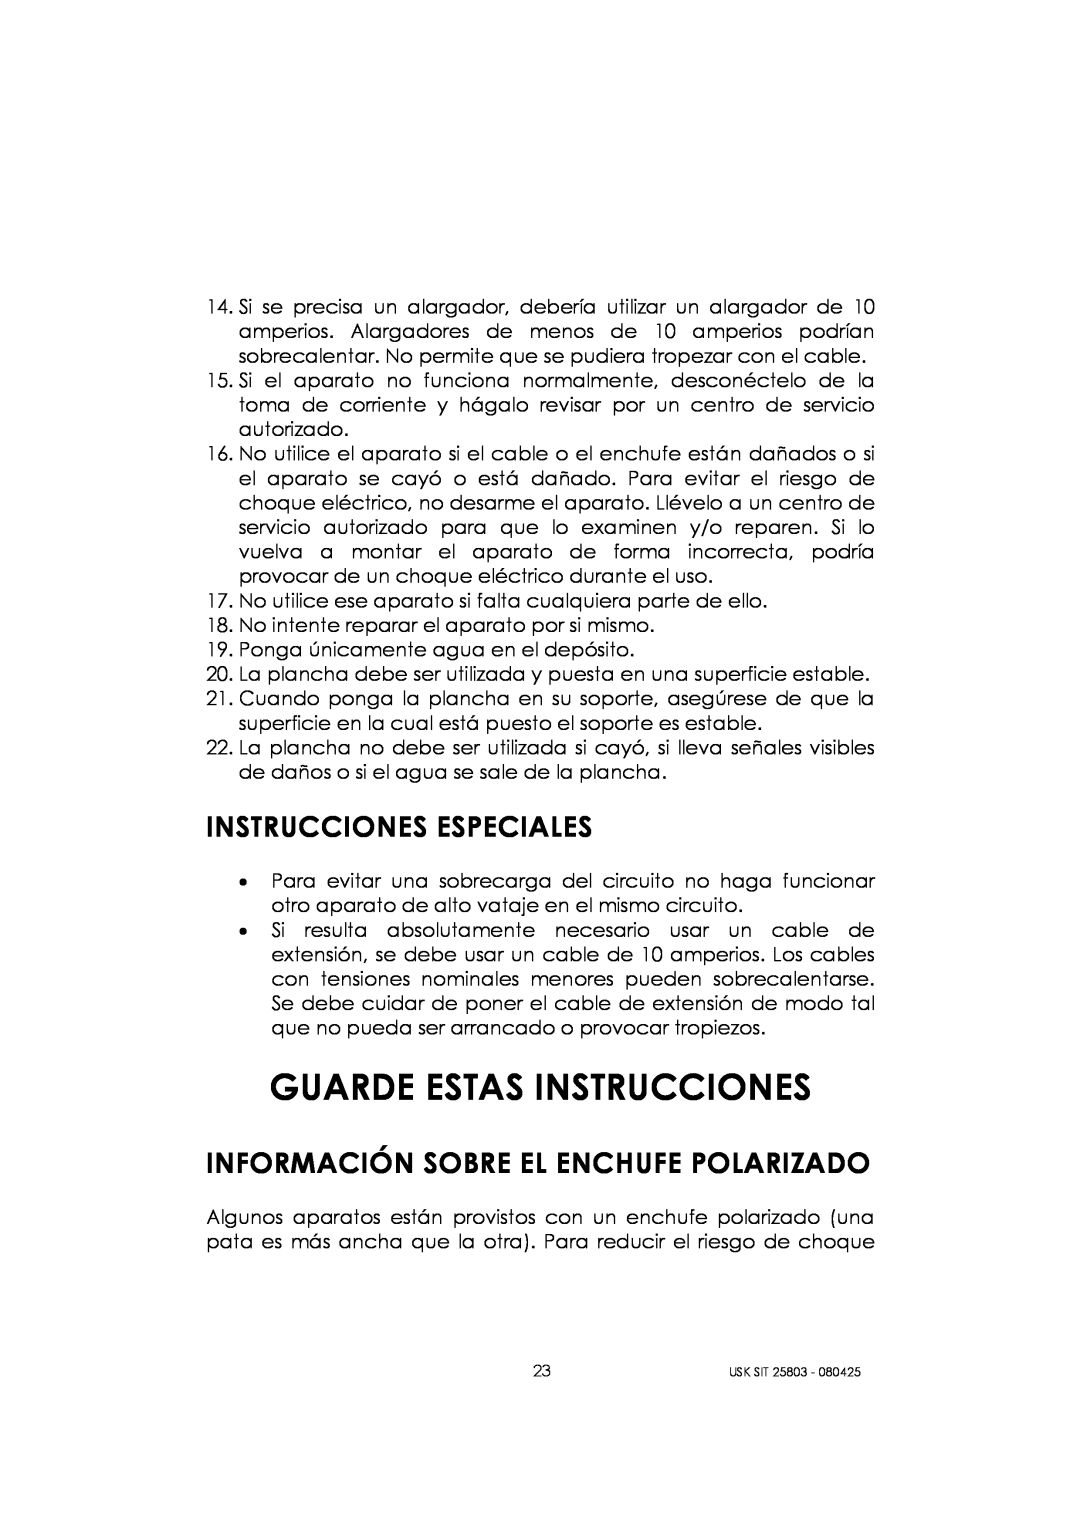 Kalorik USK SIT 25803 manual Guarde Estas Instrucciones, Instrucciones Especiales, Información Sobre El Enchufe Polarizado 